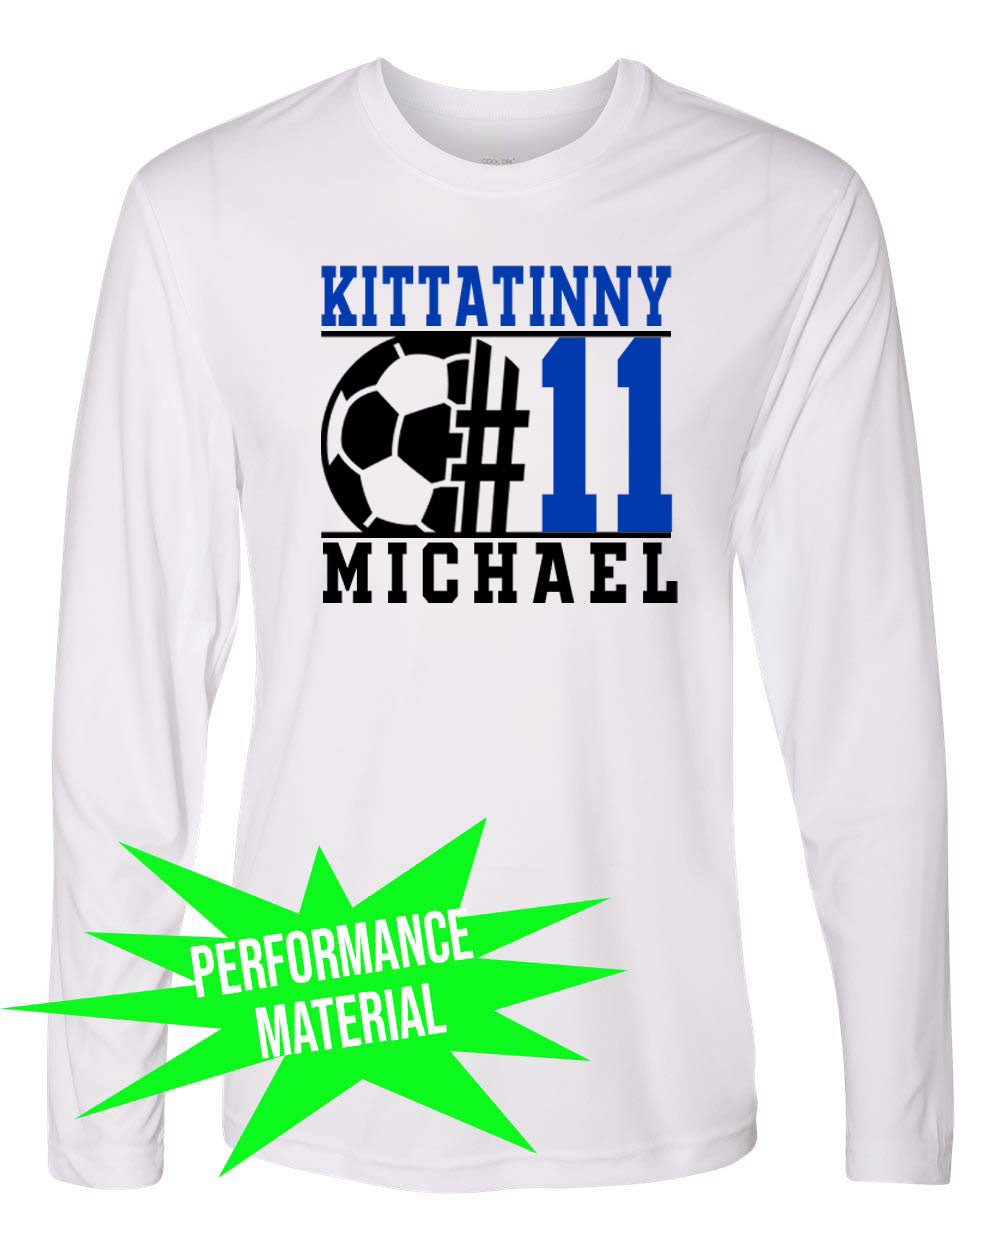 Kittatinny Soccer Performance Material Design 5 Long Sleeve Shirt